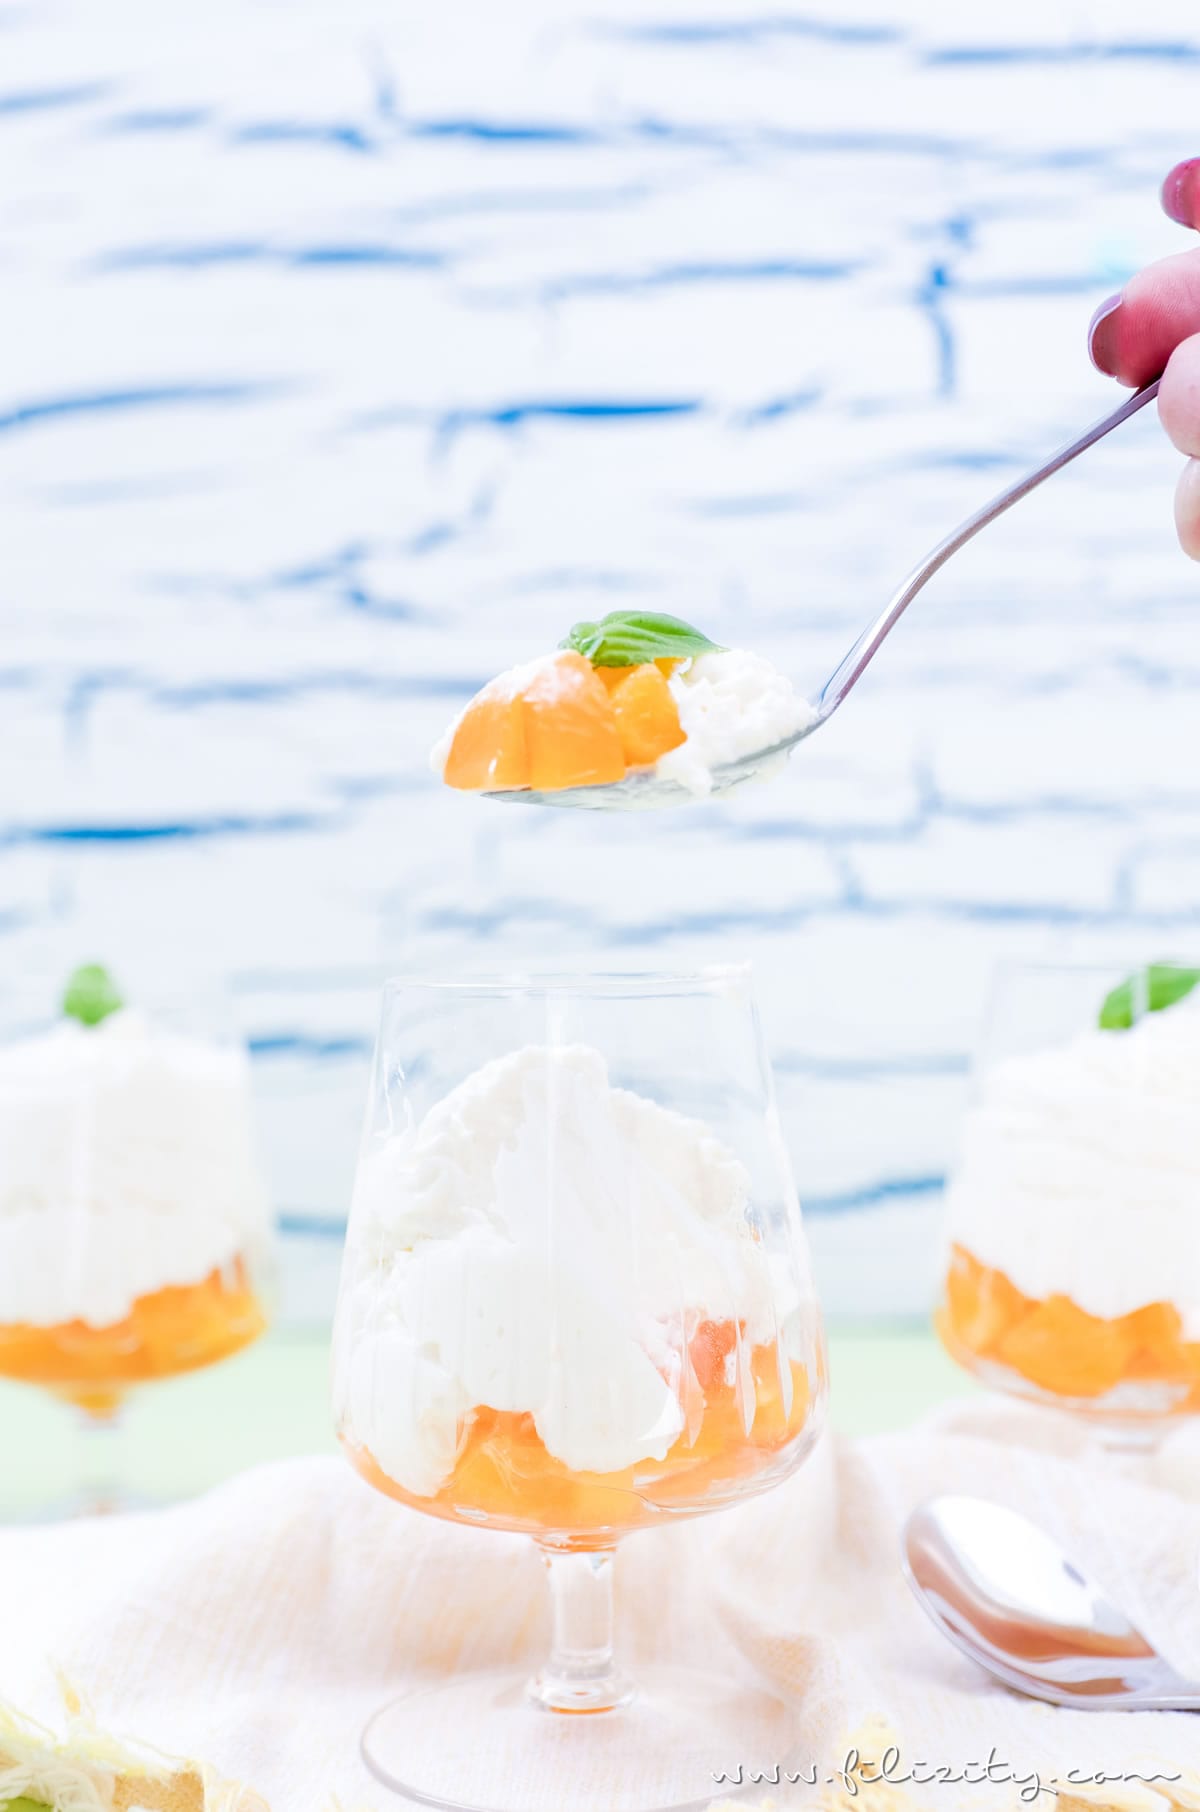 Himmlisches Dessert-Rezept: Mascarpone-Creme mit Aprikosen | Filizity.com | Food-Blog aus dem Rheinland #ostern #dessert #lastminiute